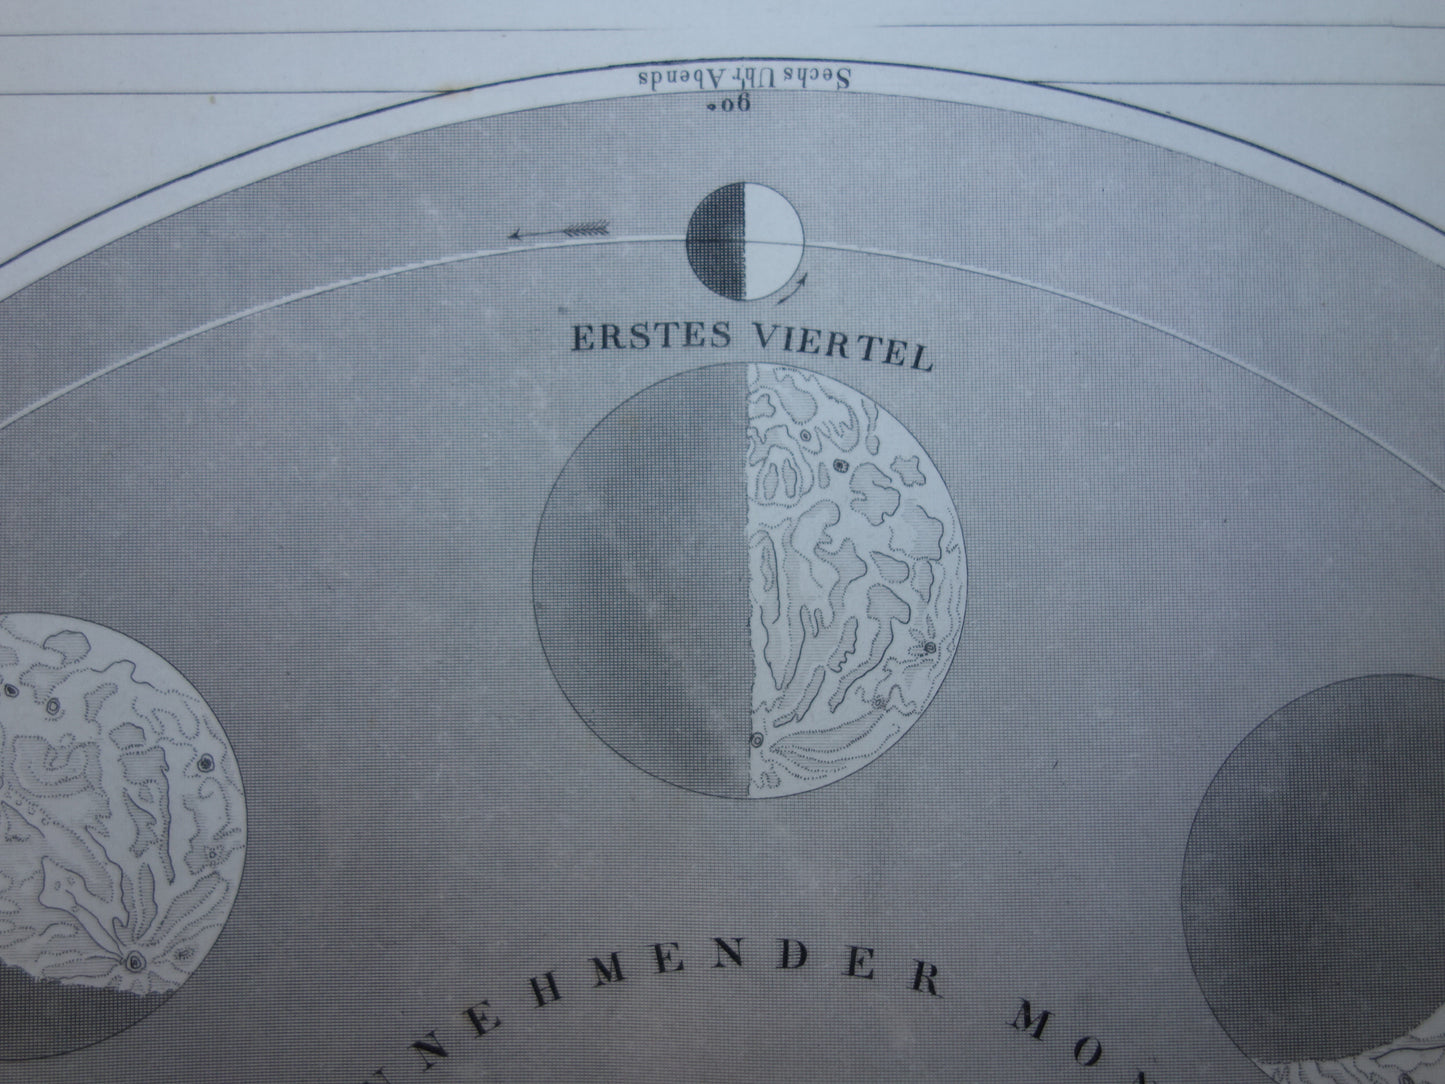 Oude kaart van de baan van de Maan 1849 antieke astronomie prent print maansverduistering maanstanden origineel vintage